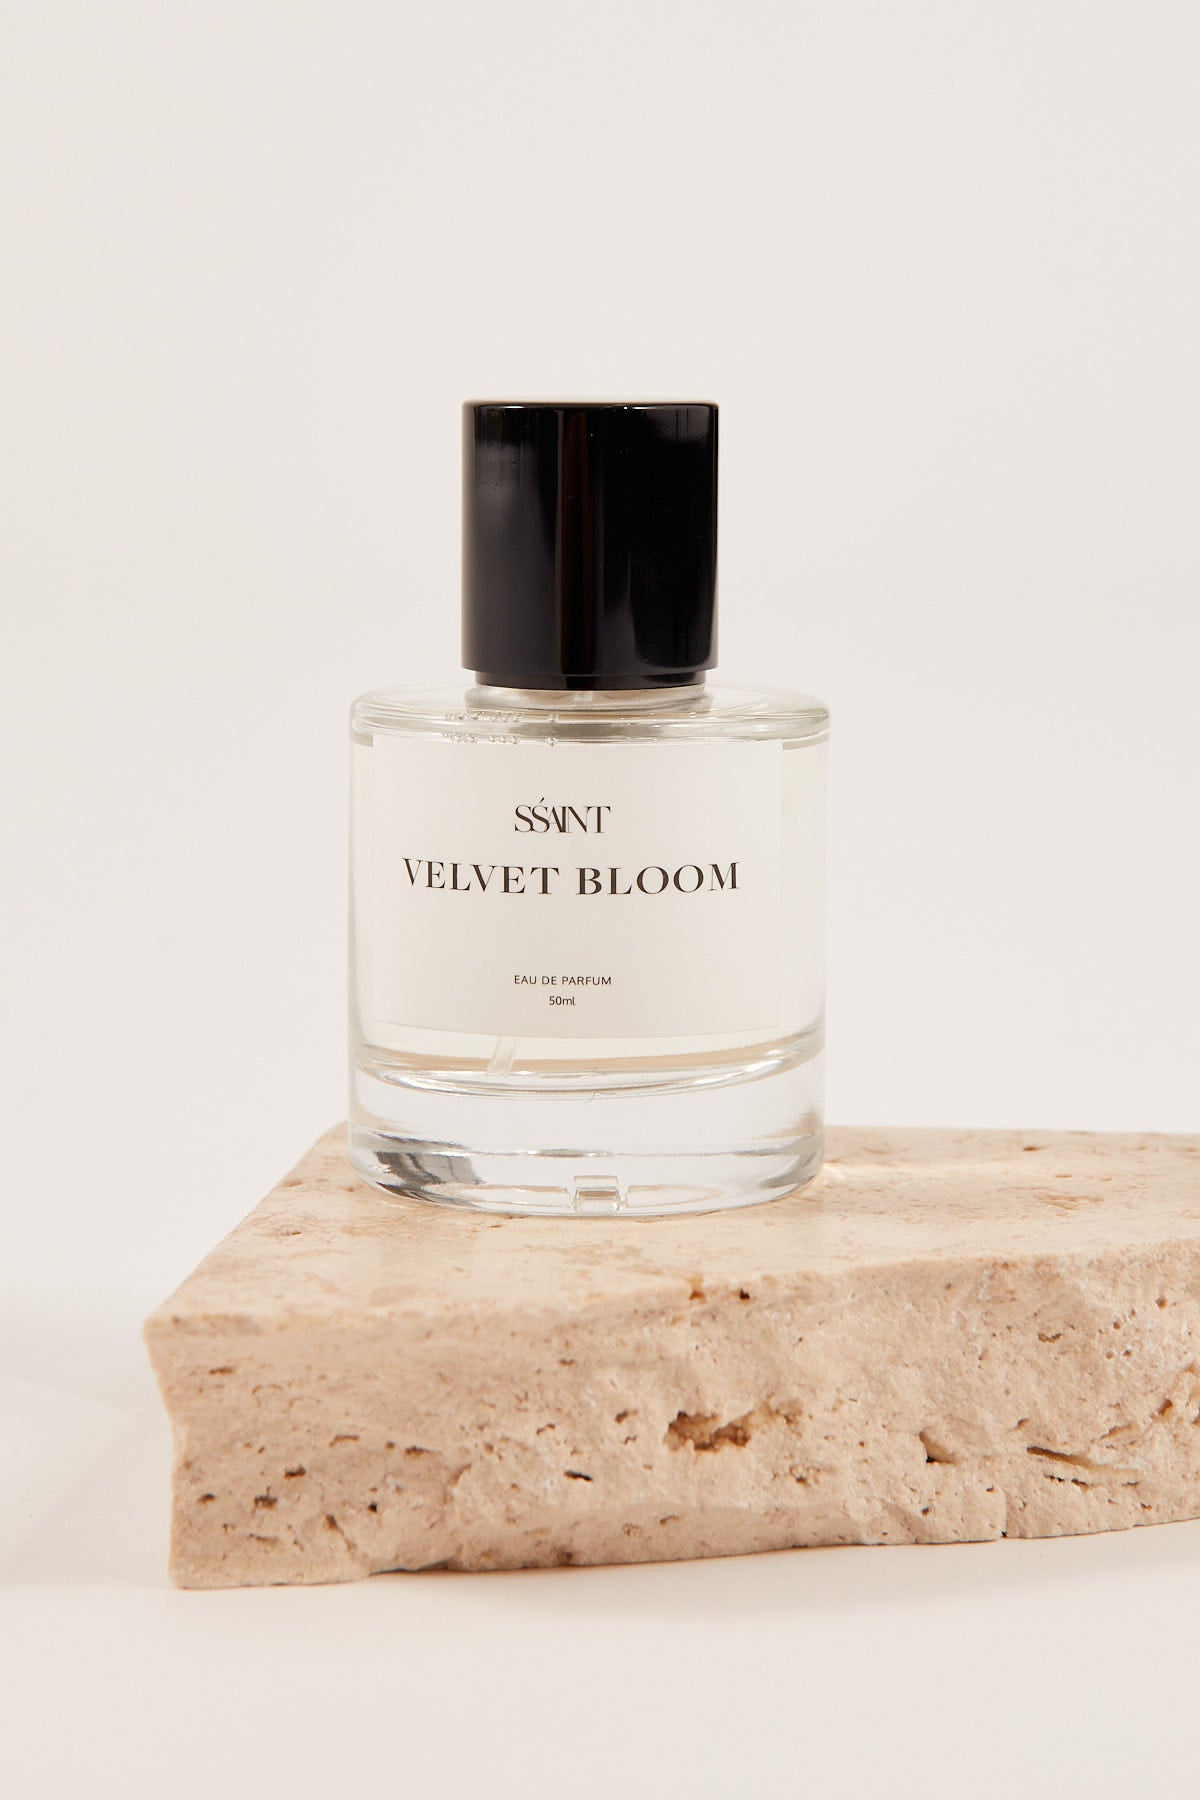 Ssaint Velvet Bloom 50ml